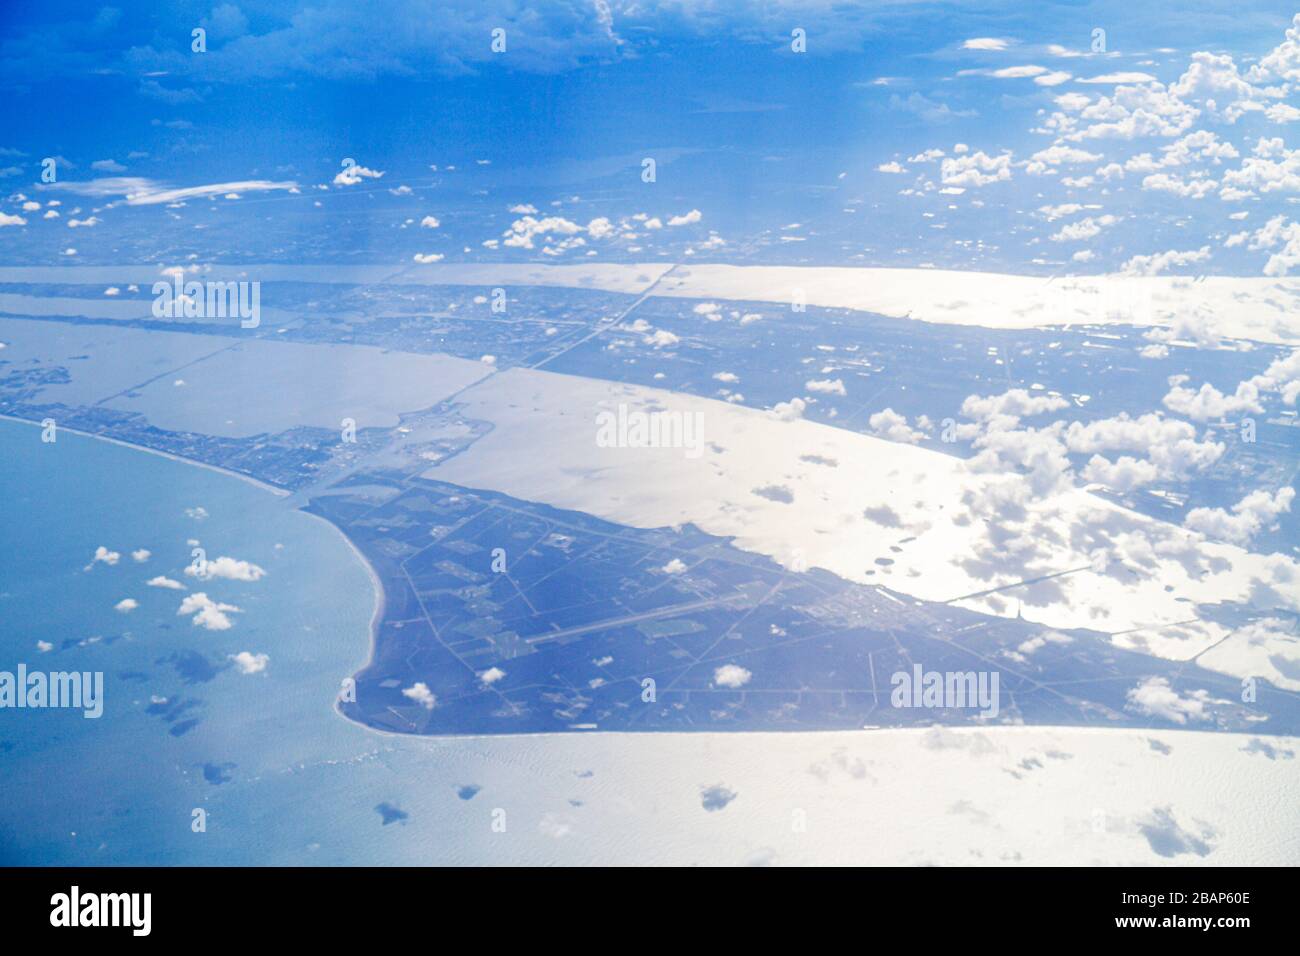 Florida, Cape Canaveral, American Airlines, Flug, Passagierkabine, Fensteransicht, Luftaufnahme von oben, 35,000 Meter, Atlantischer Ozean Wasser Banane Stockfoto